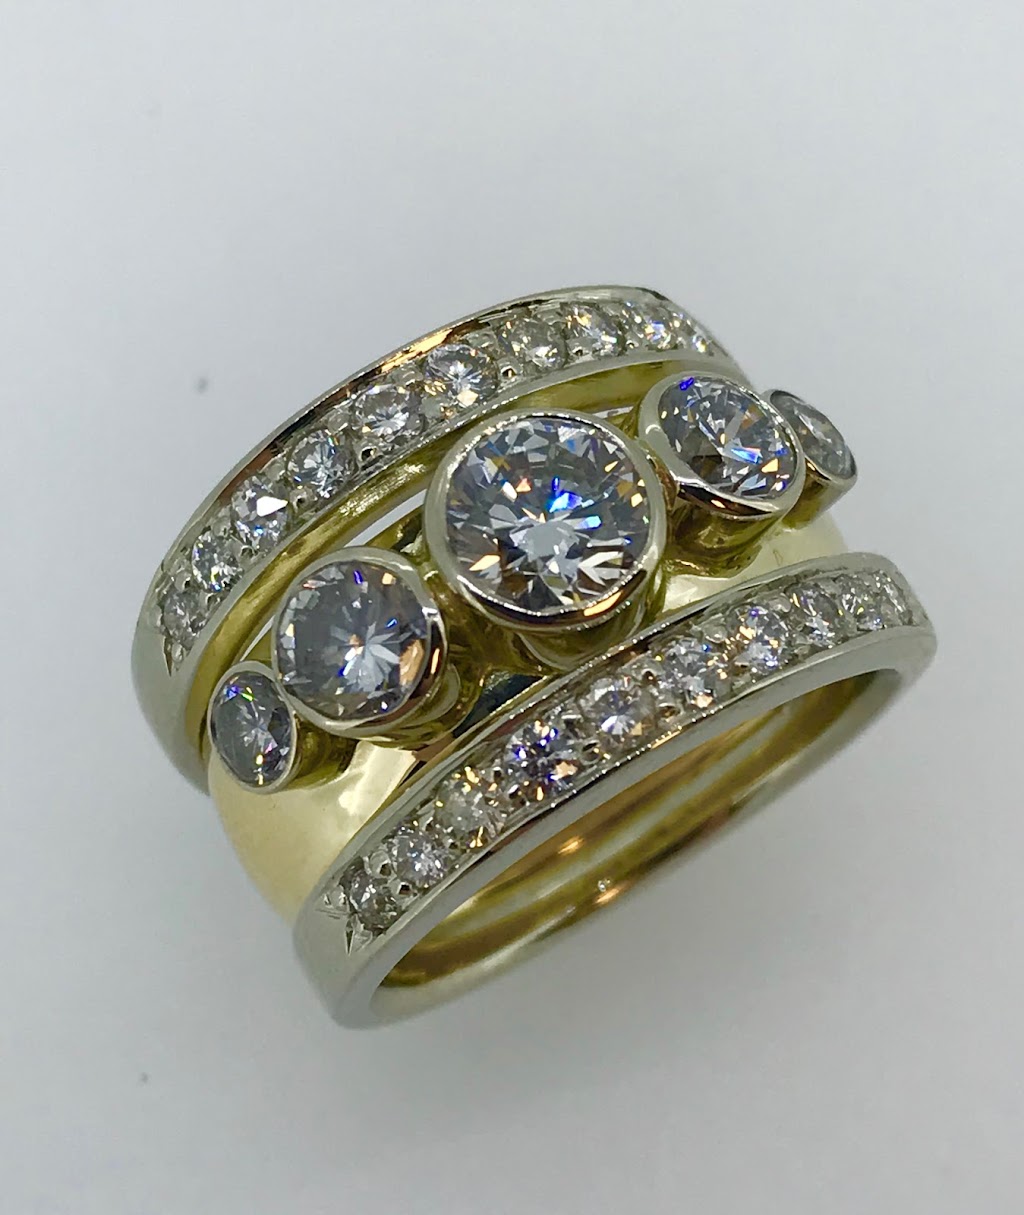 M Grosser Jewelry Design | 580 E Carmel Dr Suite 130, Carmel, IN 46032 | Phone: (317) 663-7000